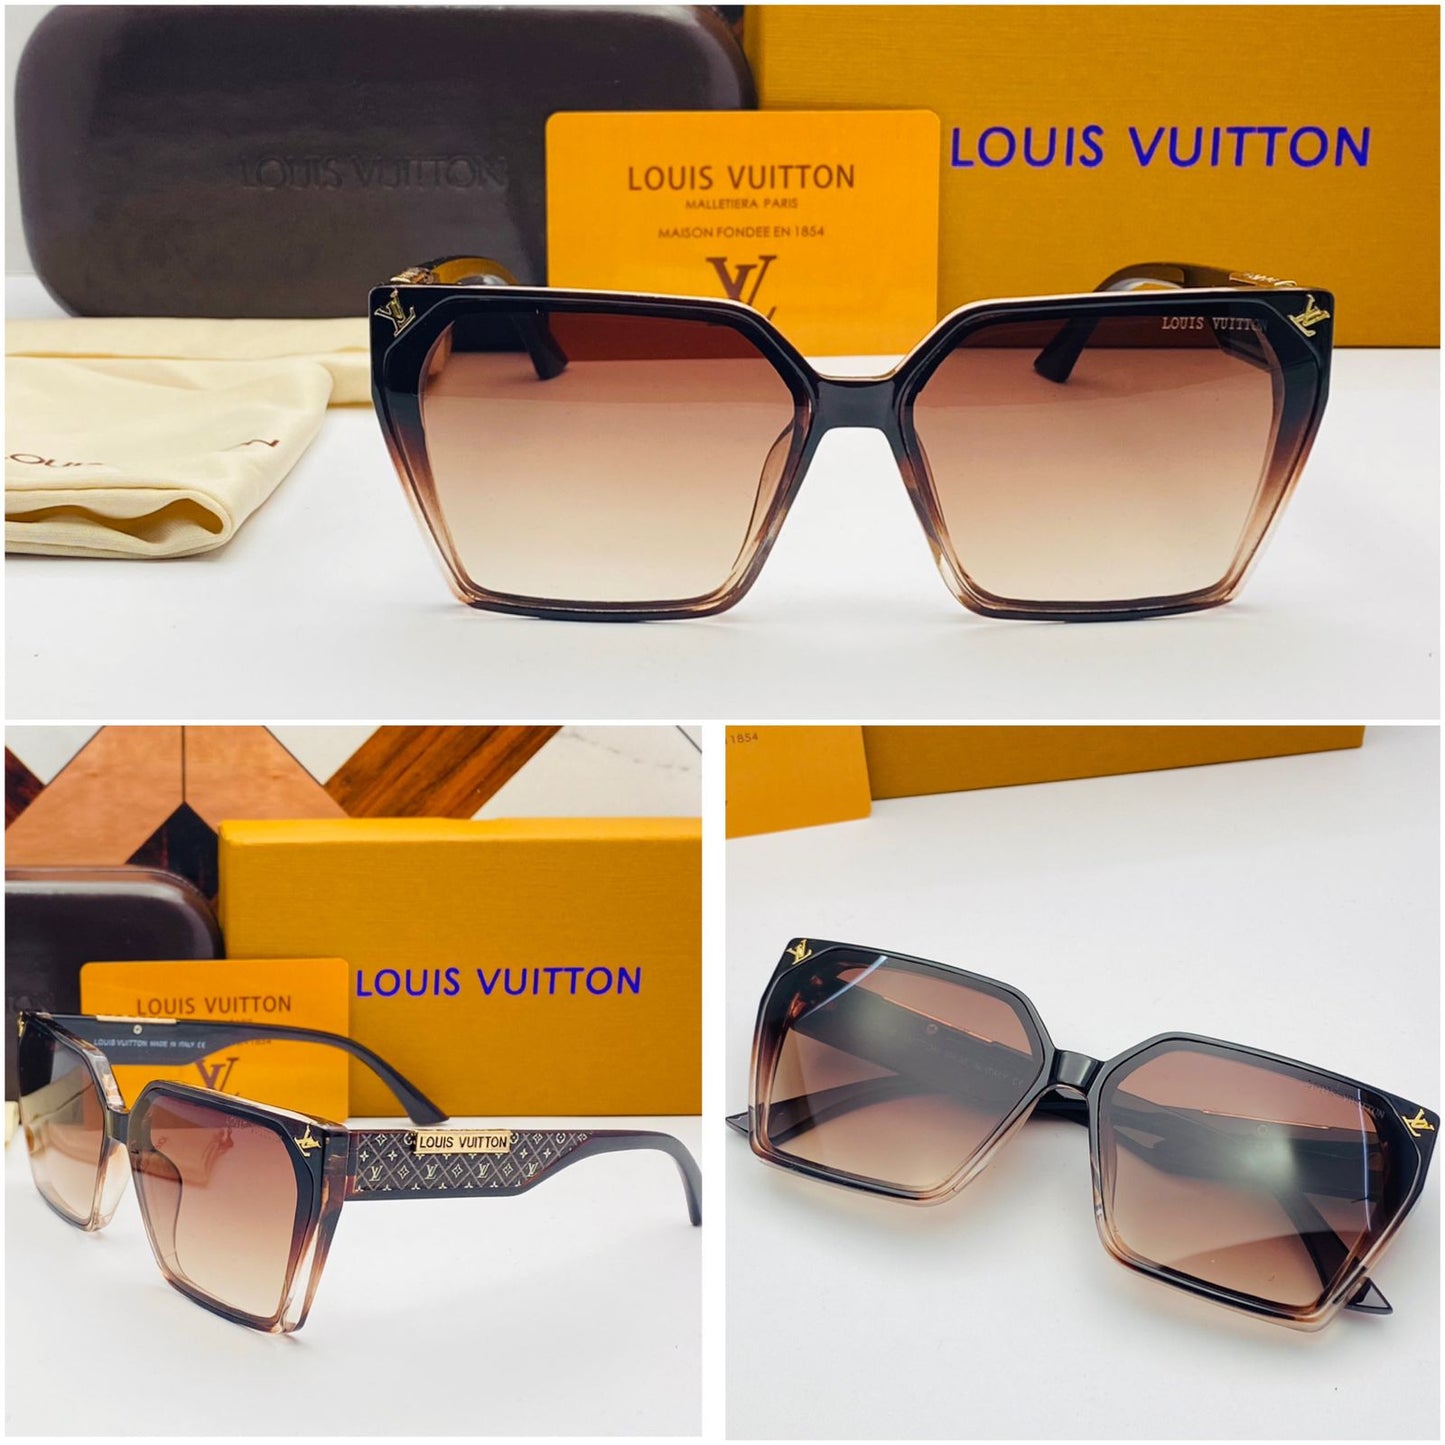 Louis Vuitton Clash monogram sunglasses